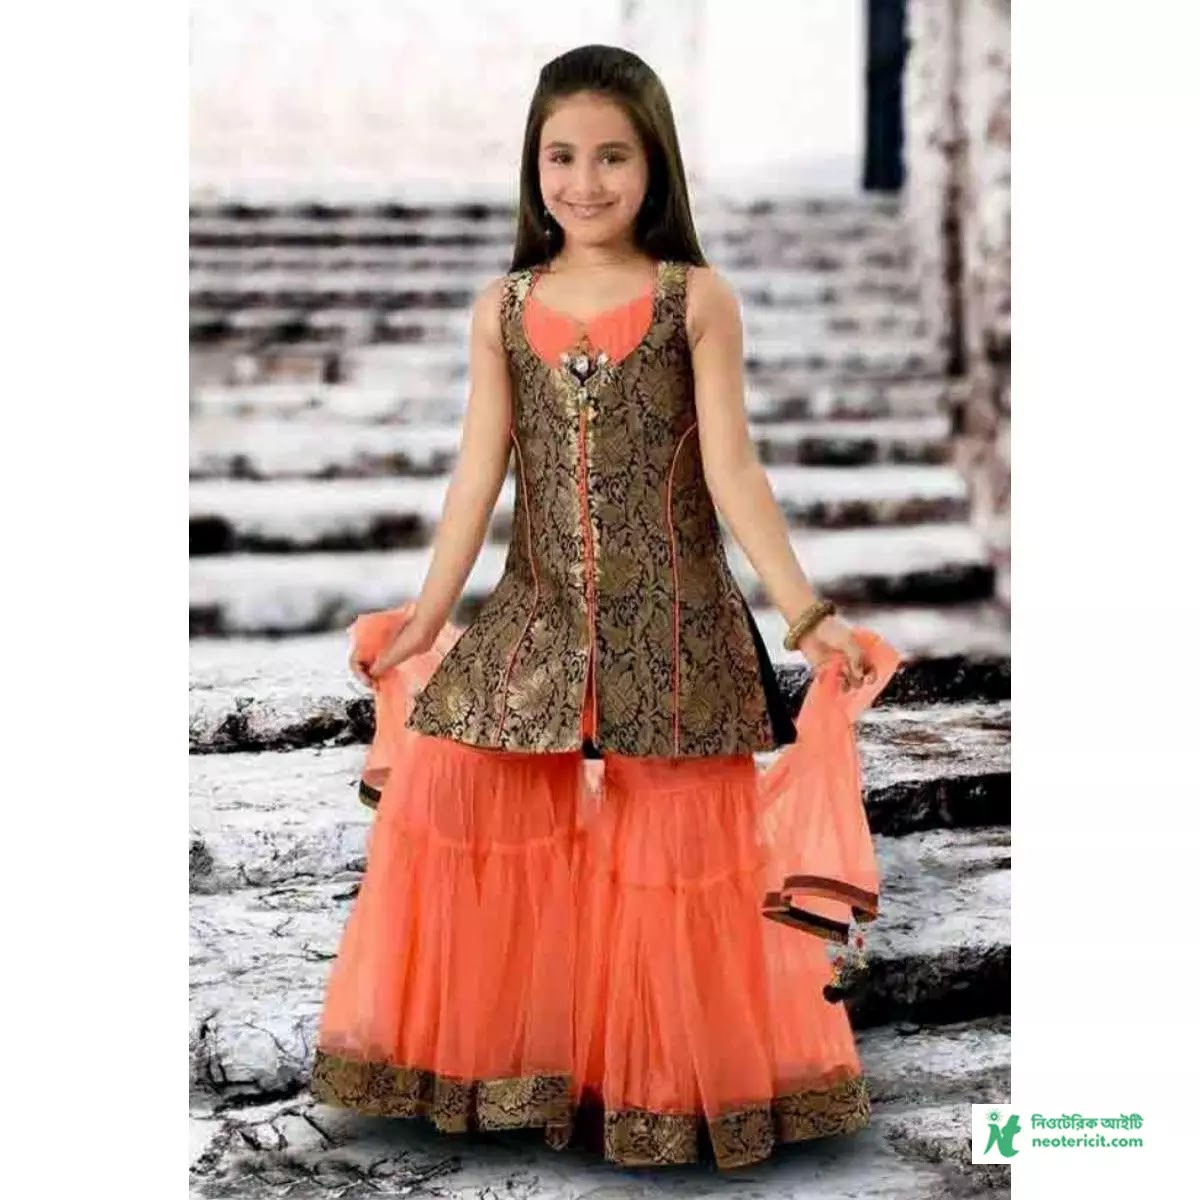 Sharara Dress Baby - Sharara Dress For Kids - Sharara Dress For Kids - Sharara Dress Collection - Sharara Dress Design - Sharara Dress Pick - sharara dress - NeotericIT.com - Image no 31